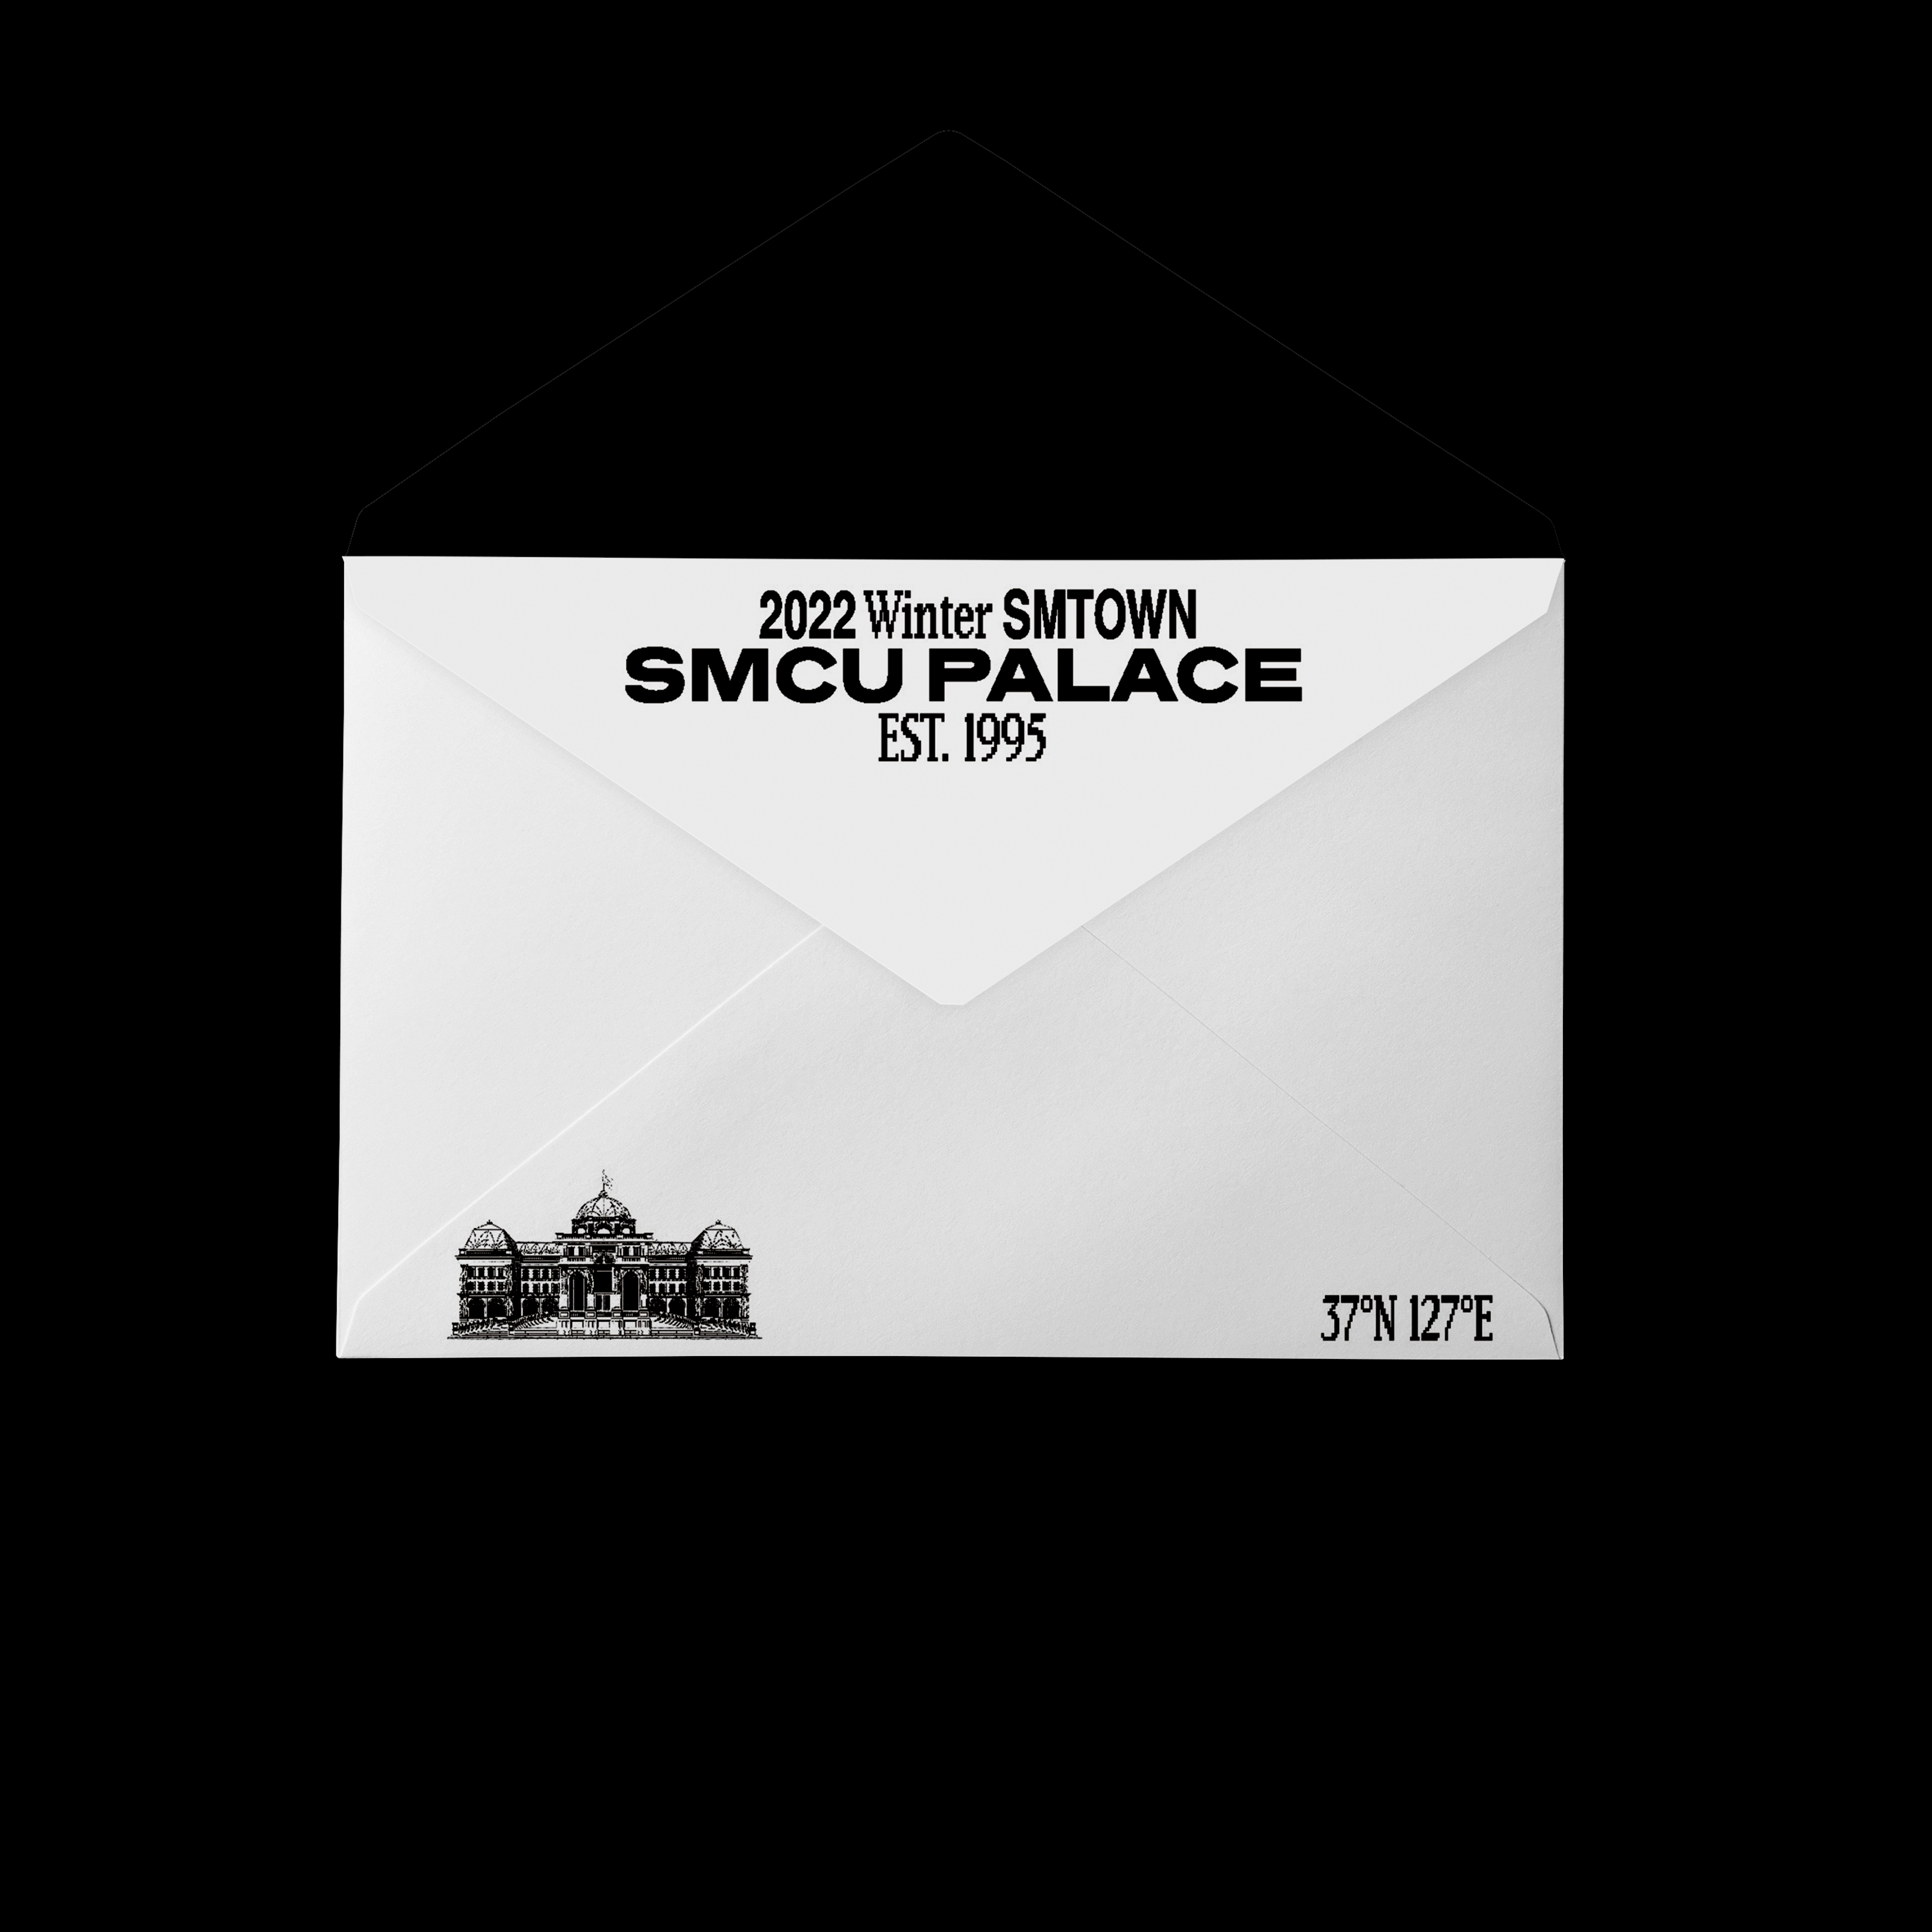 [全款 裸专] NCT 127 - 2022 Winter SMTOWN : SMCU PALACE (GUEST. NCT 127) (Membership Card Ver.) _kpop散粉收容所